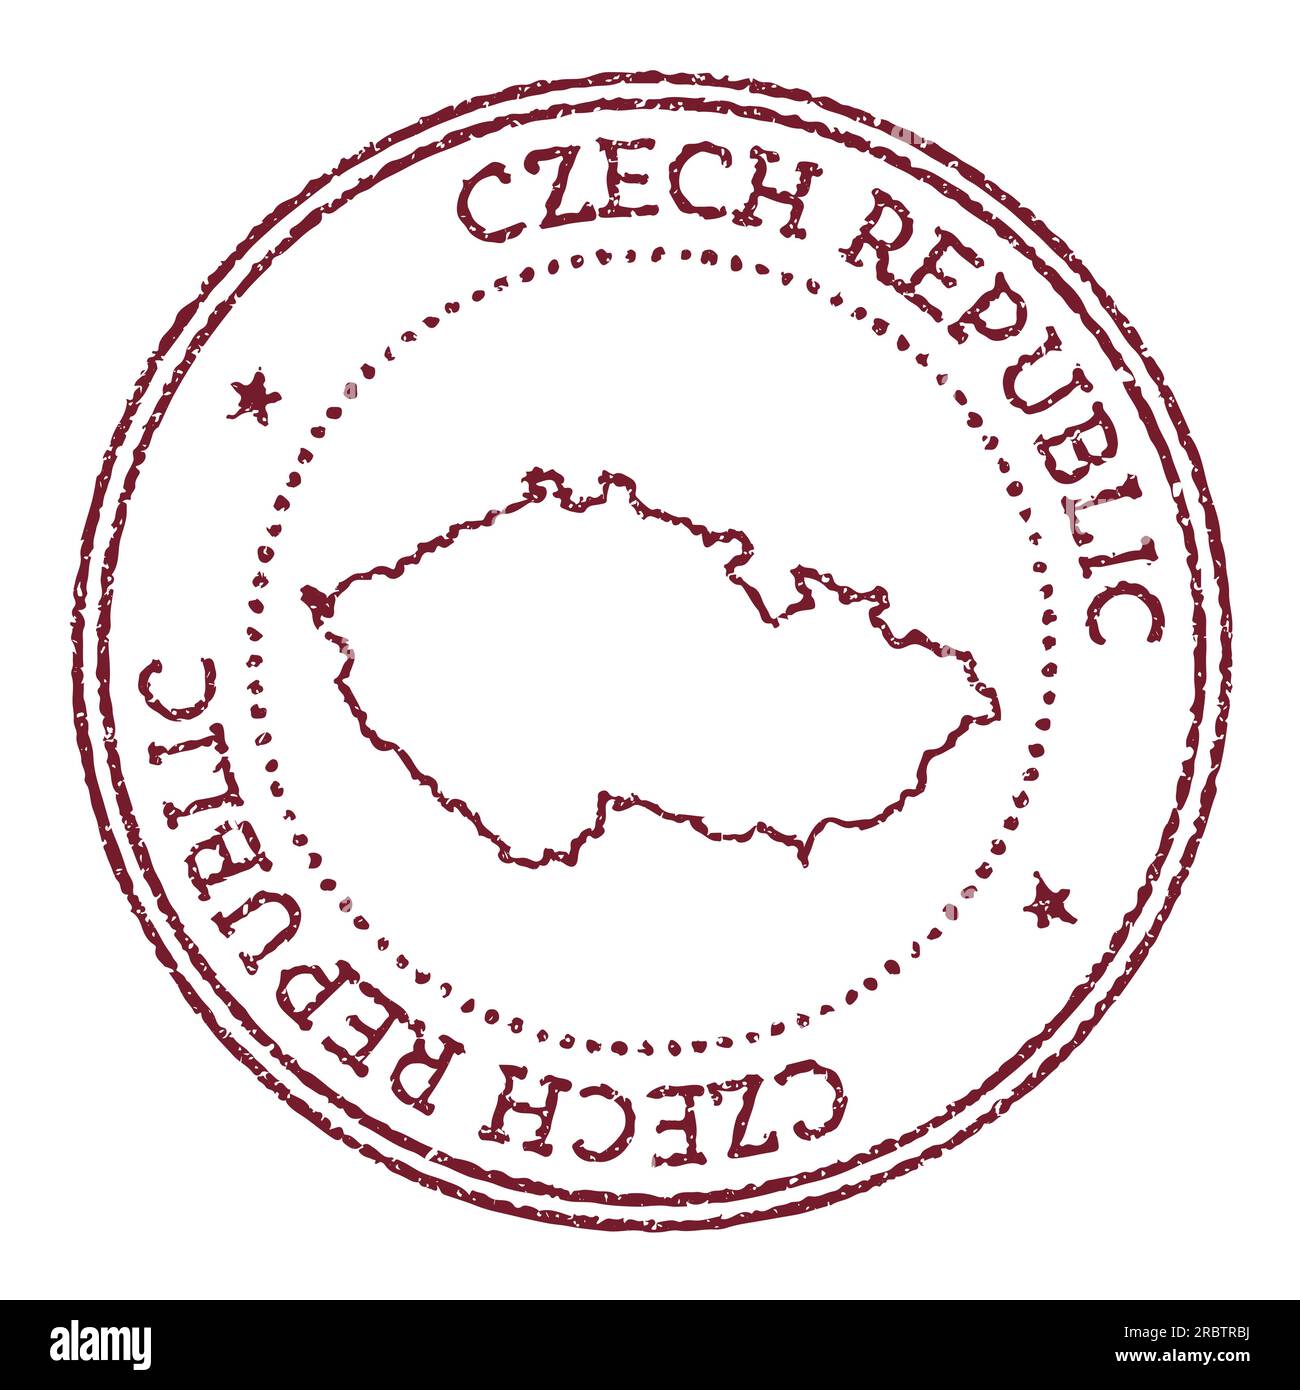 Timbre en caoutchouc rond de la République tchèque avec carte du pays. Timbre passeport rouge vintage avec texte circulaire et étoiles, illustration vectorielle. Illustration de Vecteur